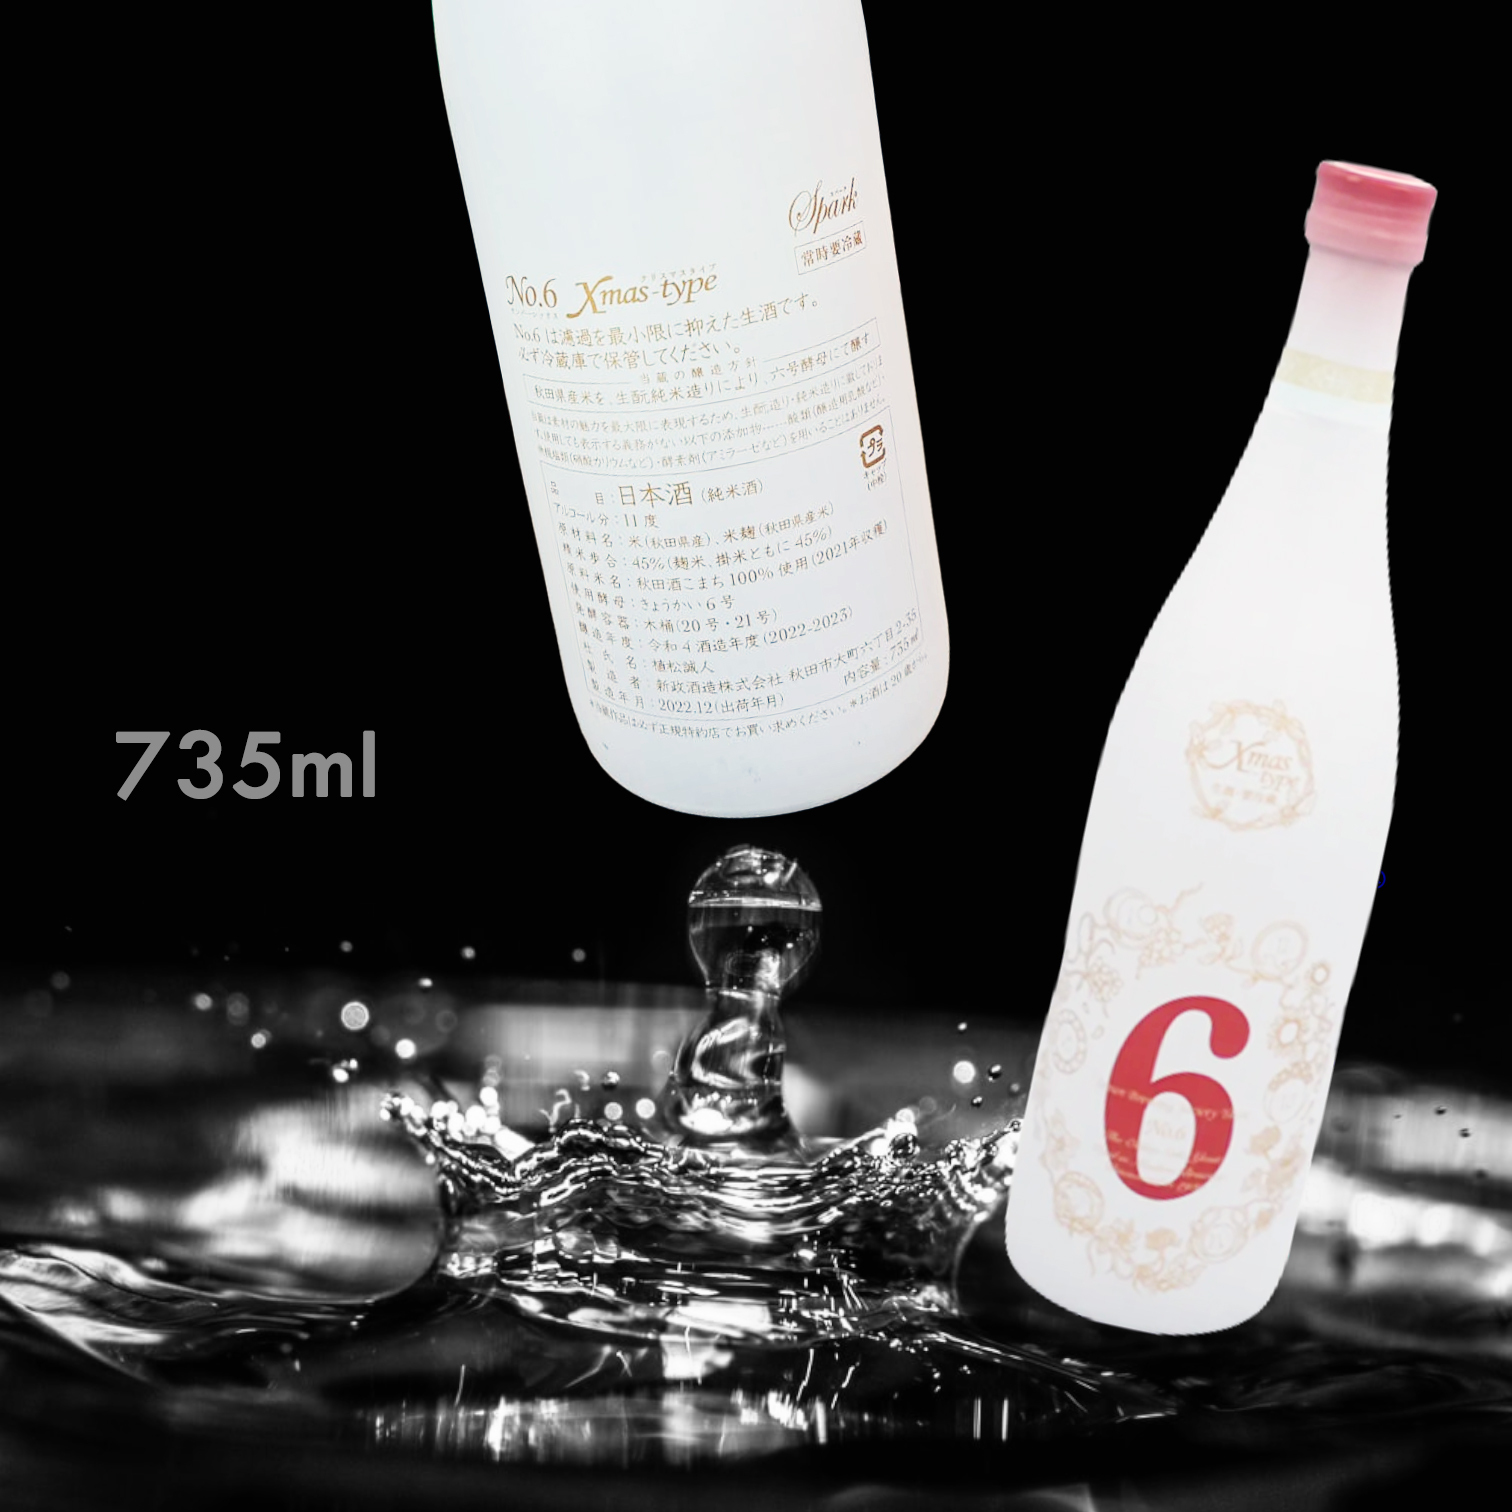 新政Xmas type Spark 生酛純米735ML|AMALL清酒店|SAKE|日本酒|果酒|梅酒